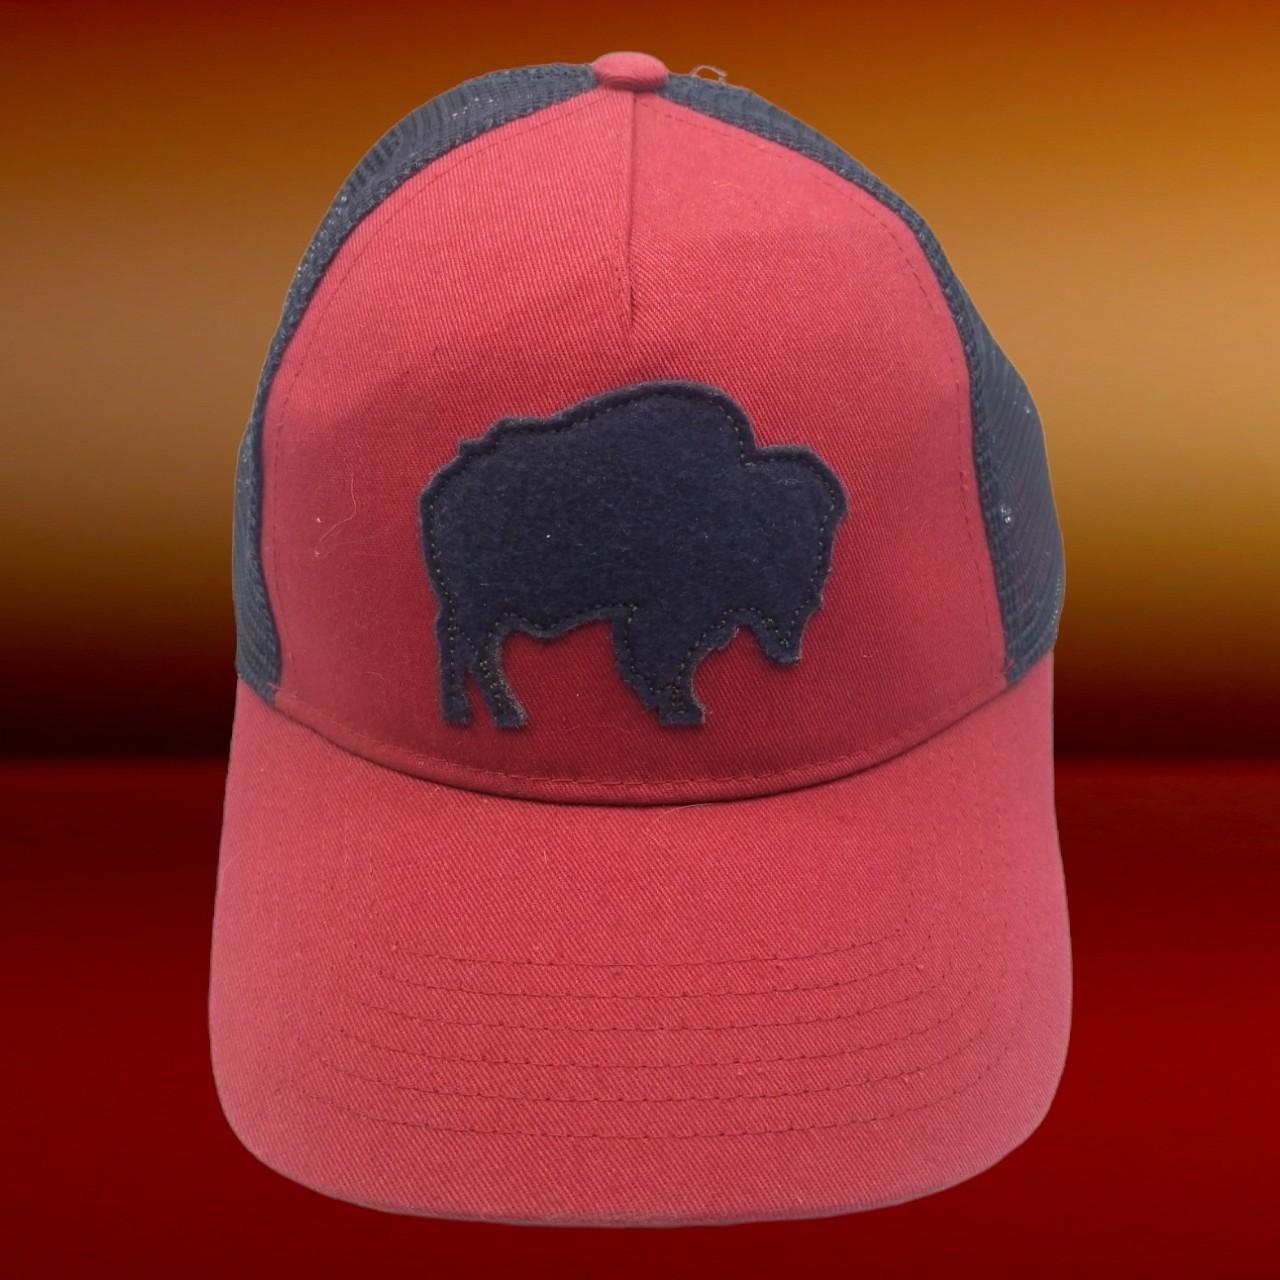 Product Image 1 - Jackson Hole Wyoming Mesh/snapback
trucker hat
Buffalo